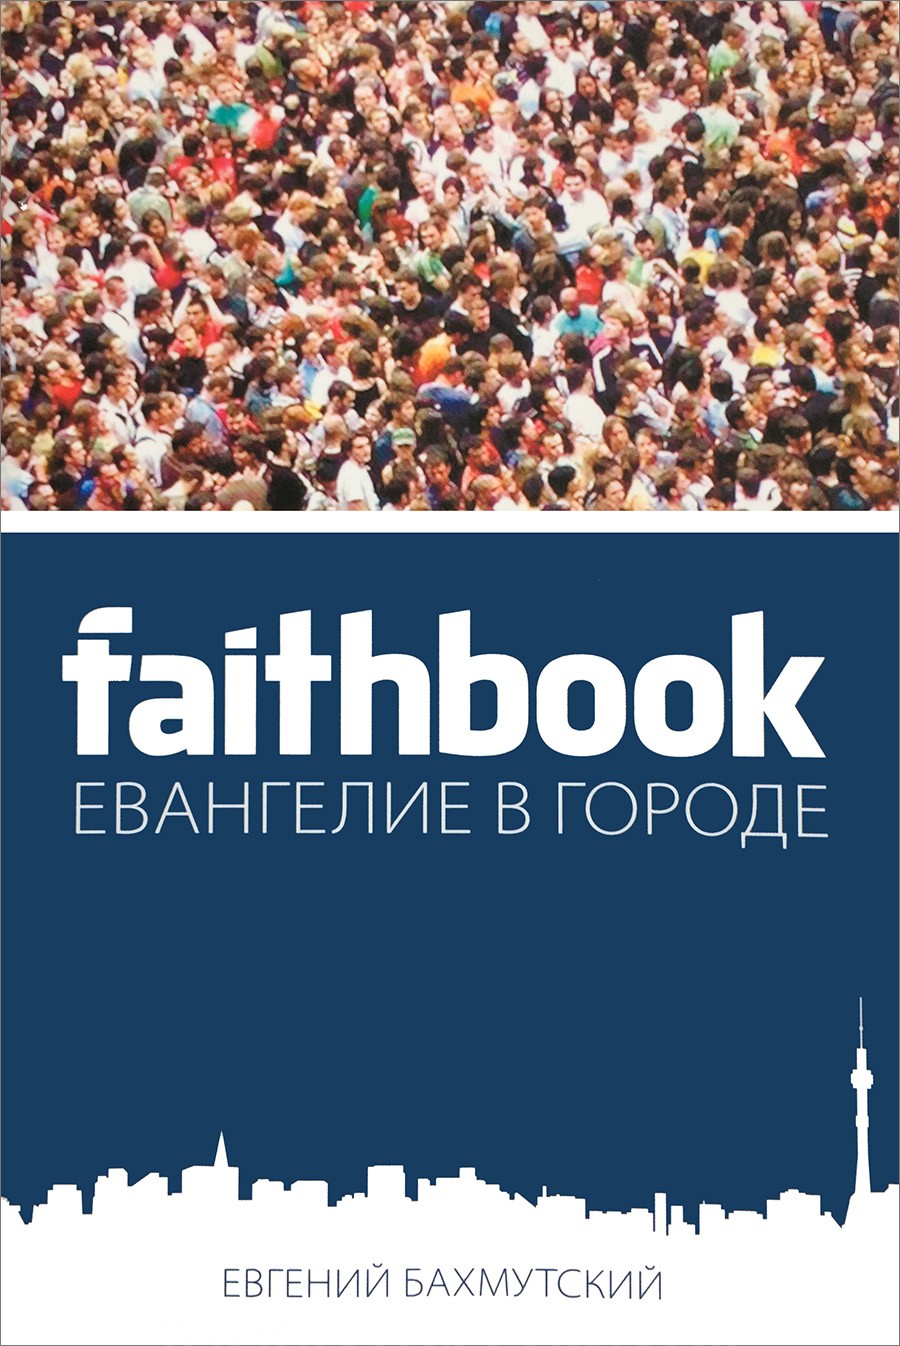 FAITHBOOK